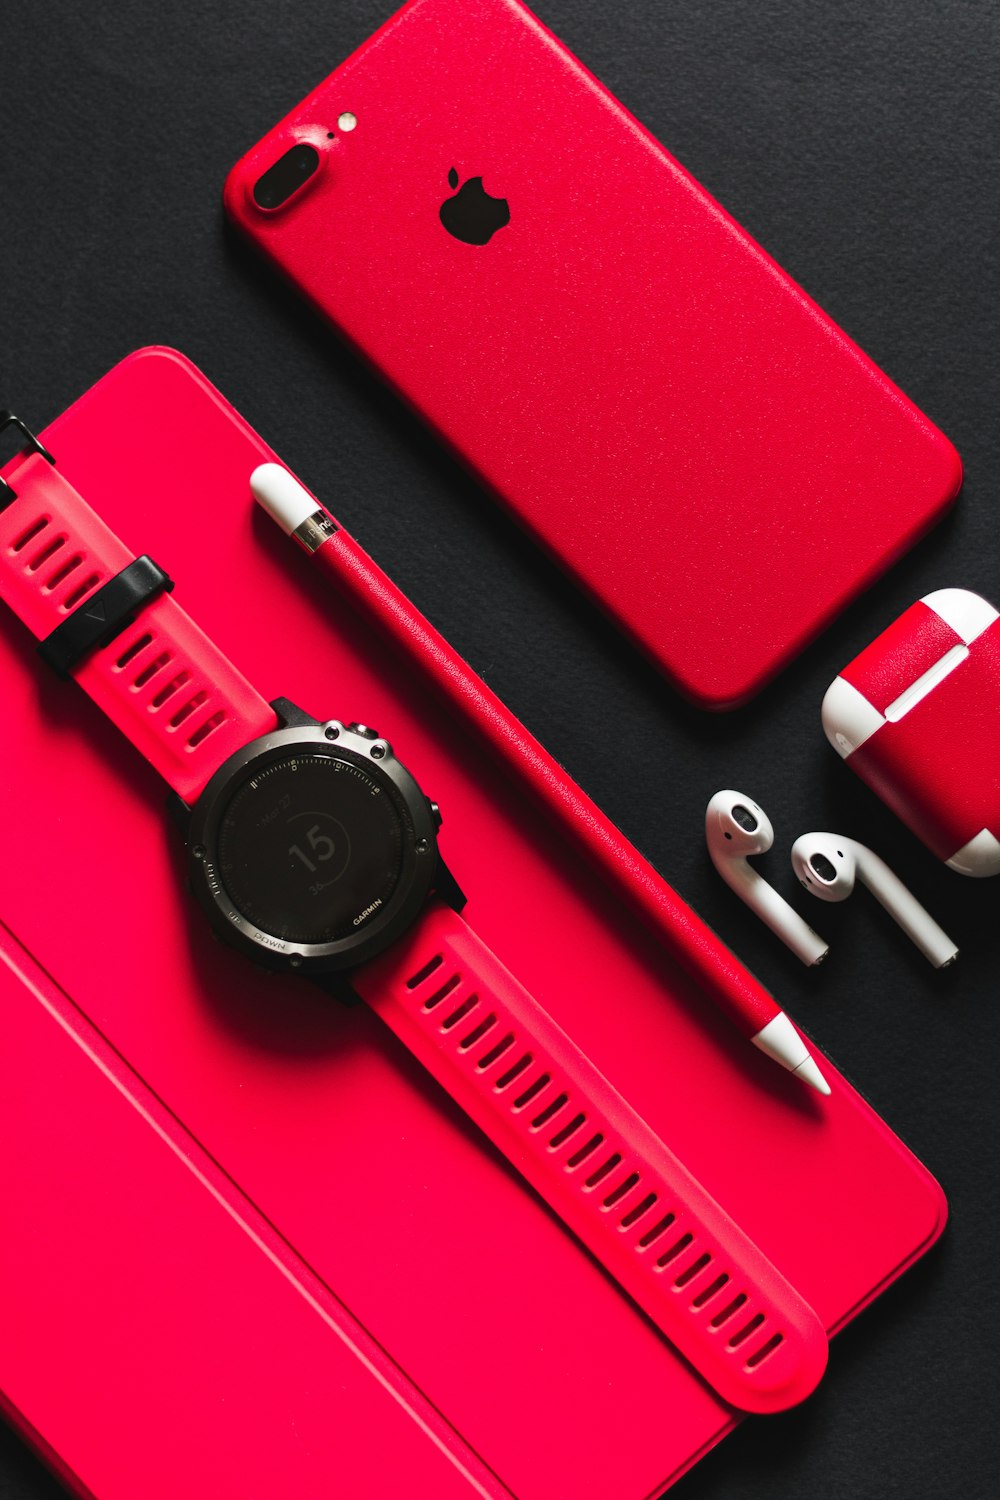 Smartwatch, Stylus, AirPods und Produkt rotes iPhone 7 auf schwarzer Oberfläche